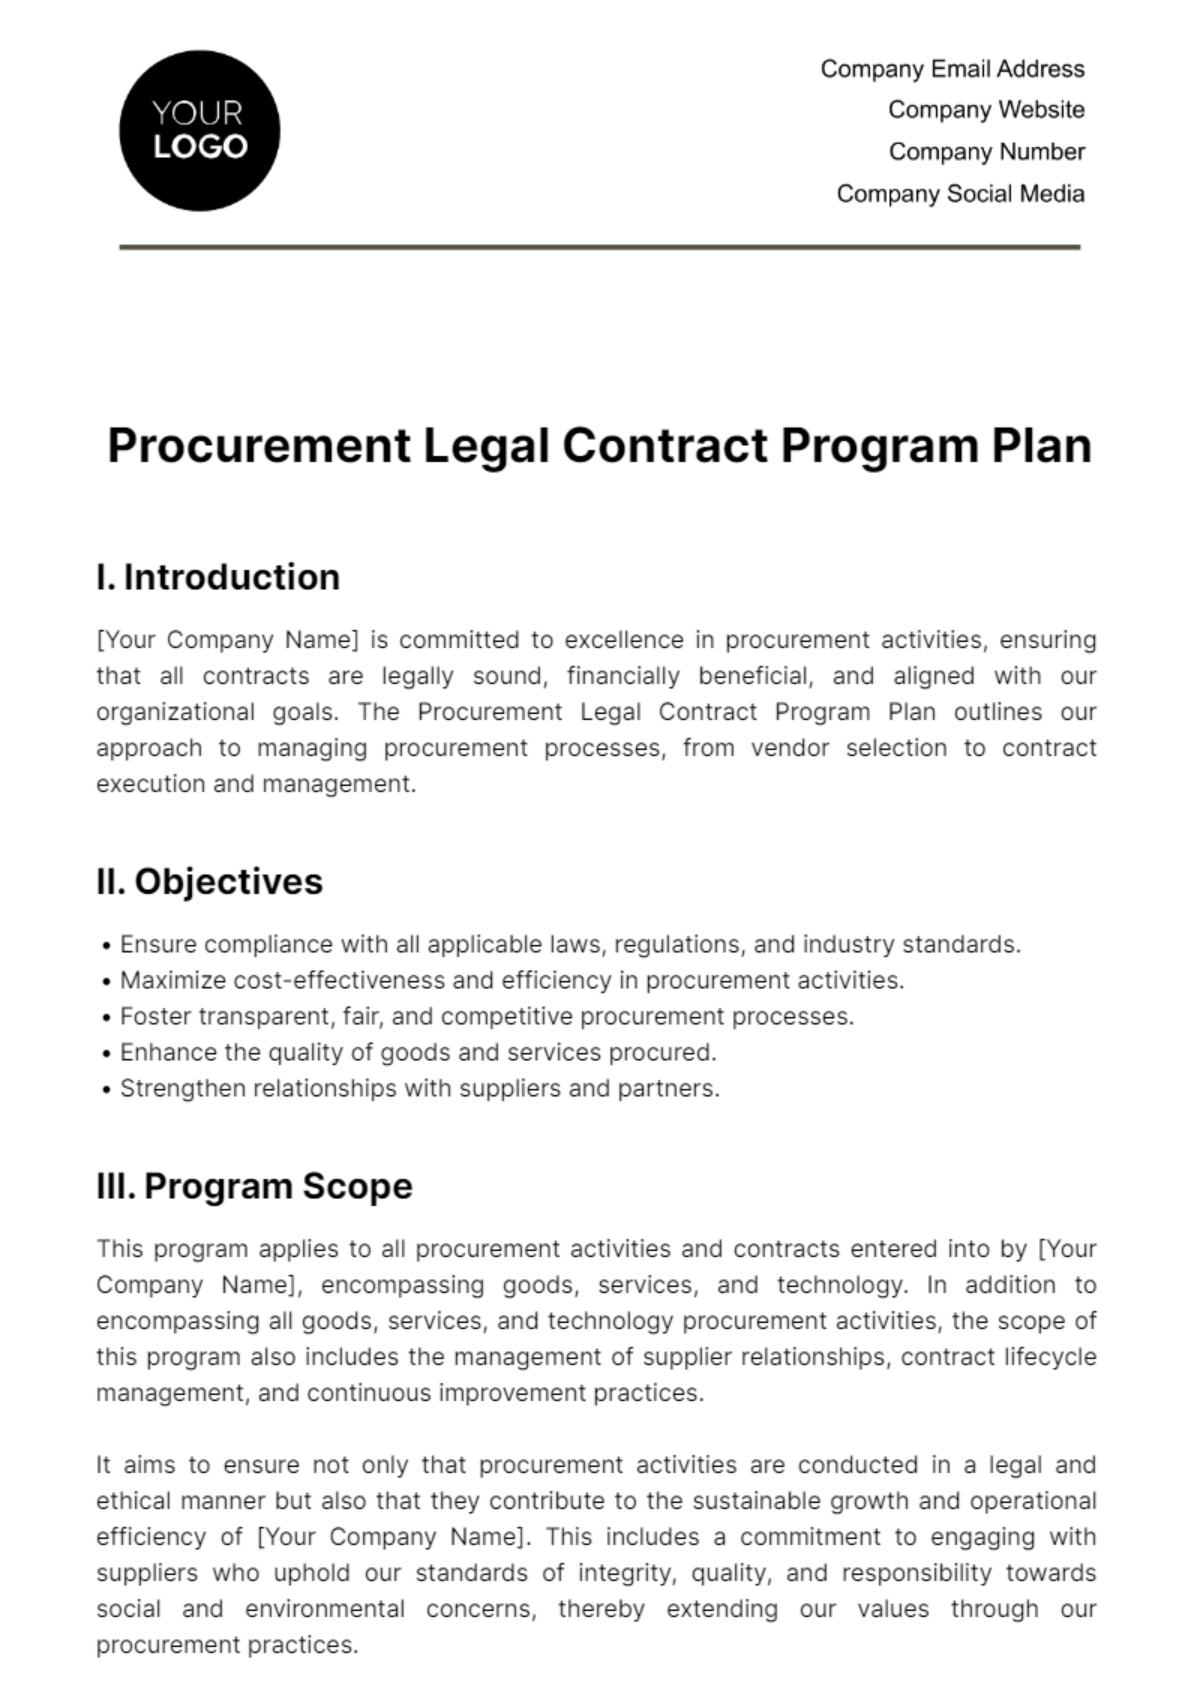 Procurement Legal Contract Program Plan Template